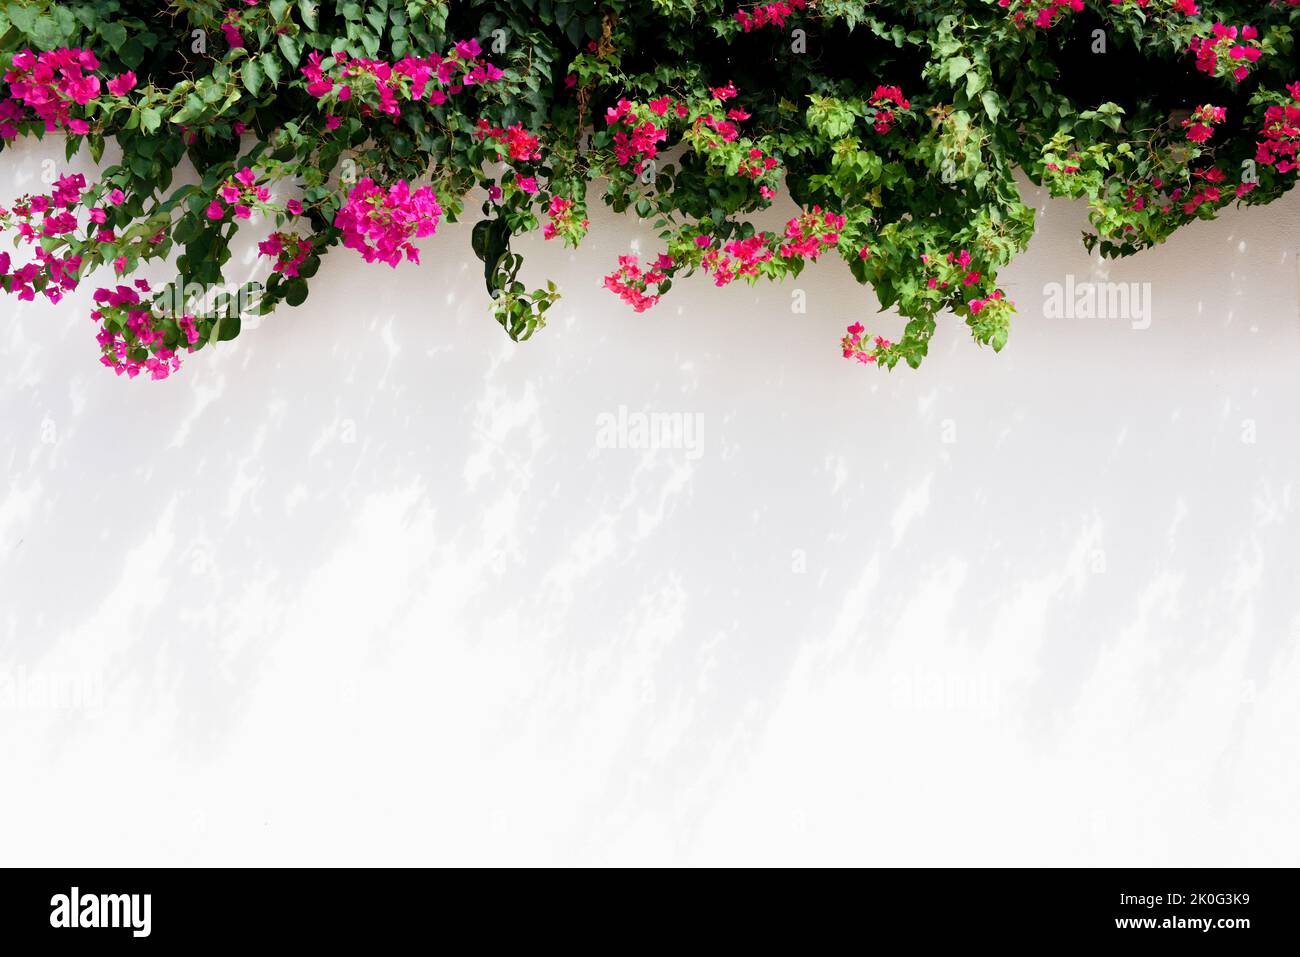 Fondo blanco de la pared con flores rosas del verano que proporcionan borde floral Foto de stock